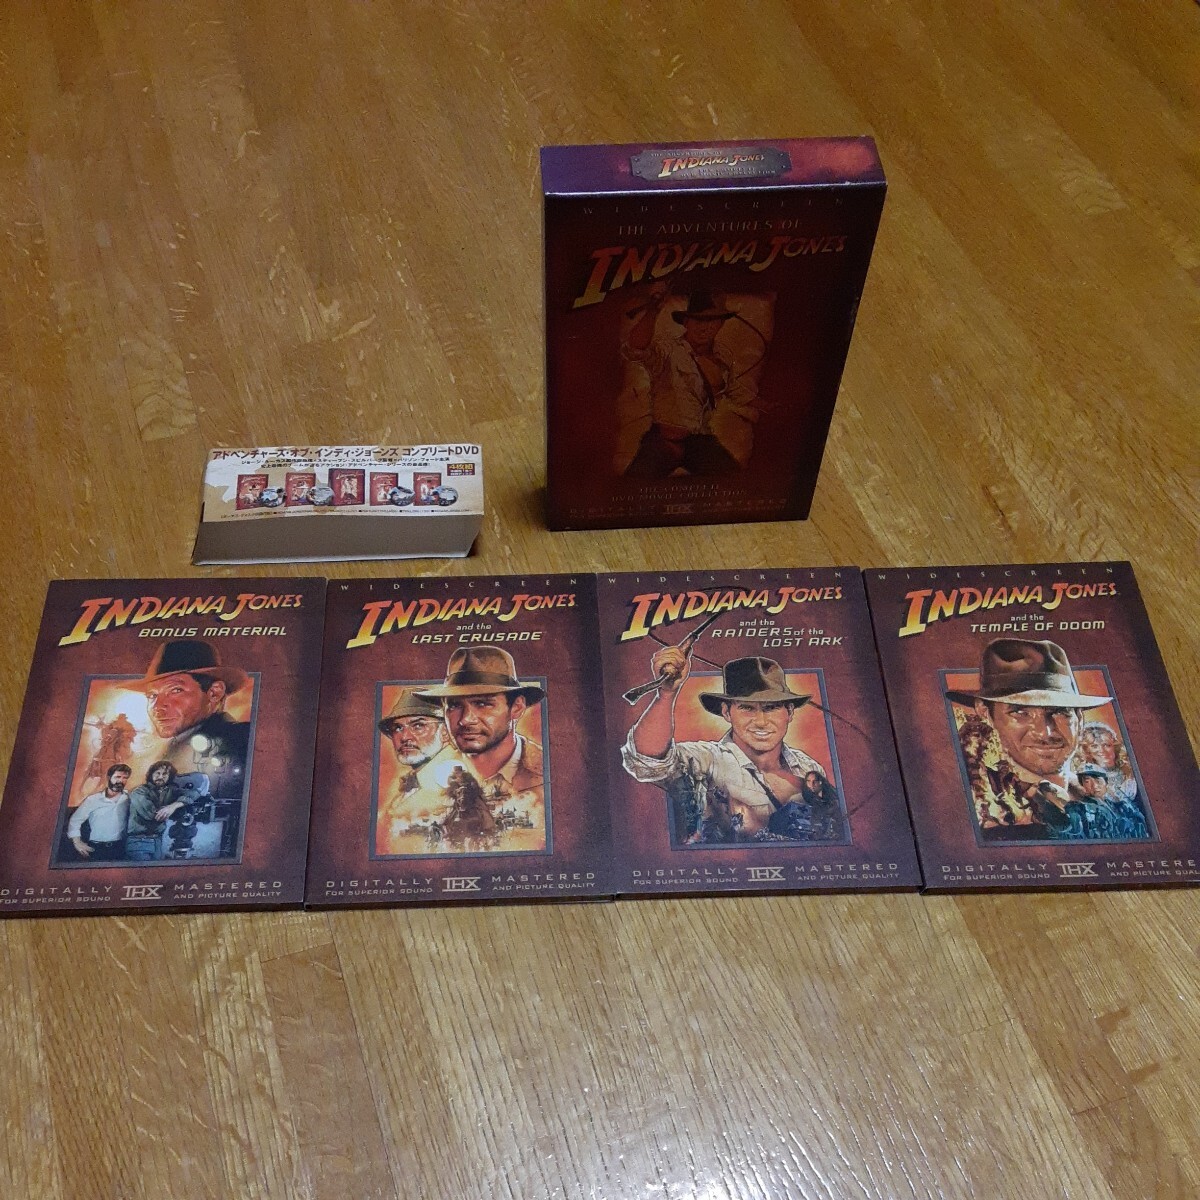  adventure zob Indy Jones Complete DVD collection ( repeated departure low price version ) ( relation ) Indy Jones s tea 